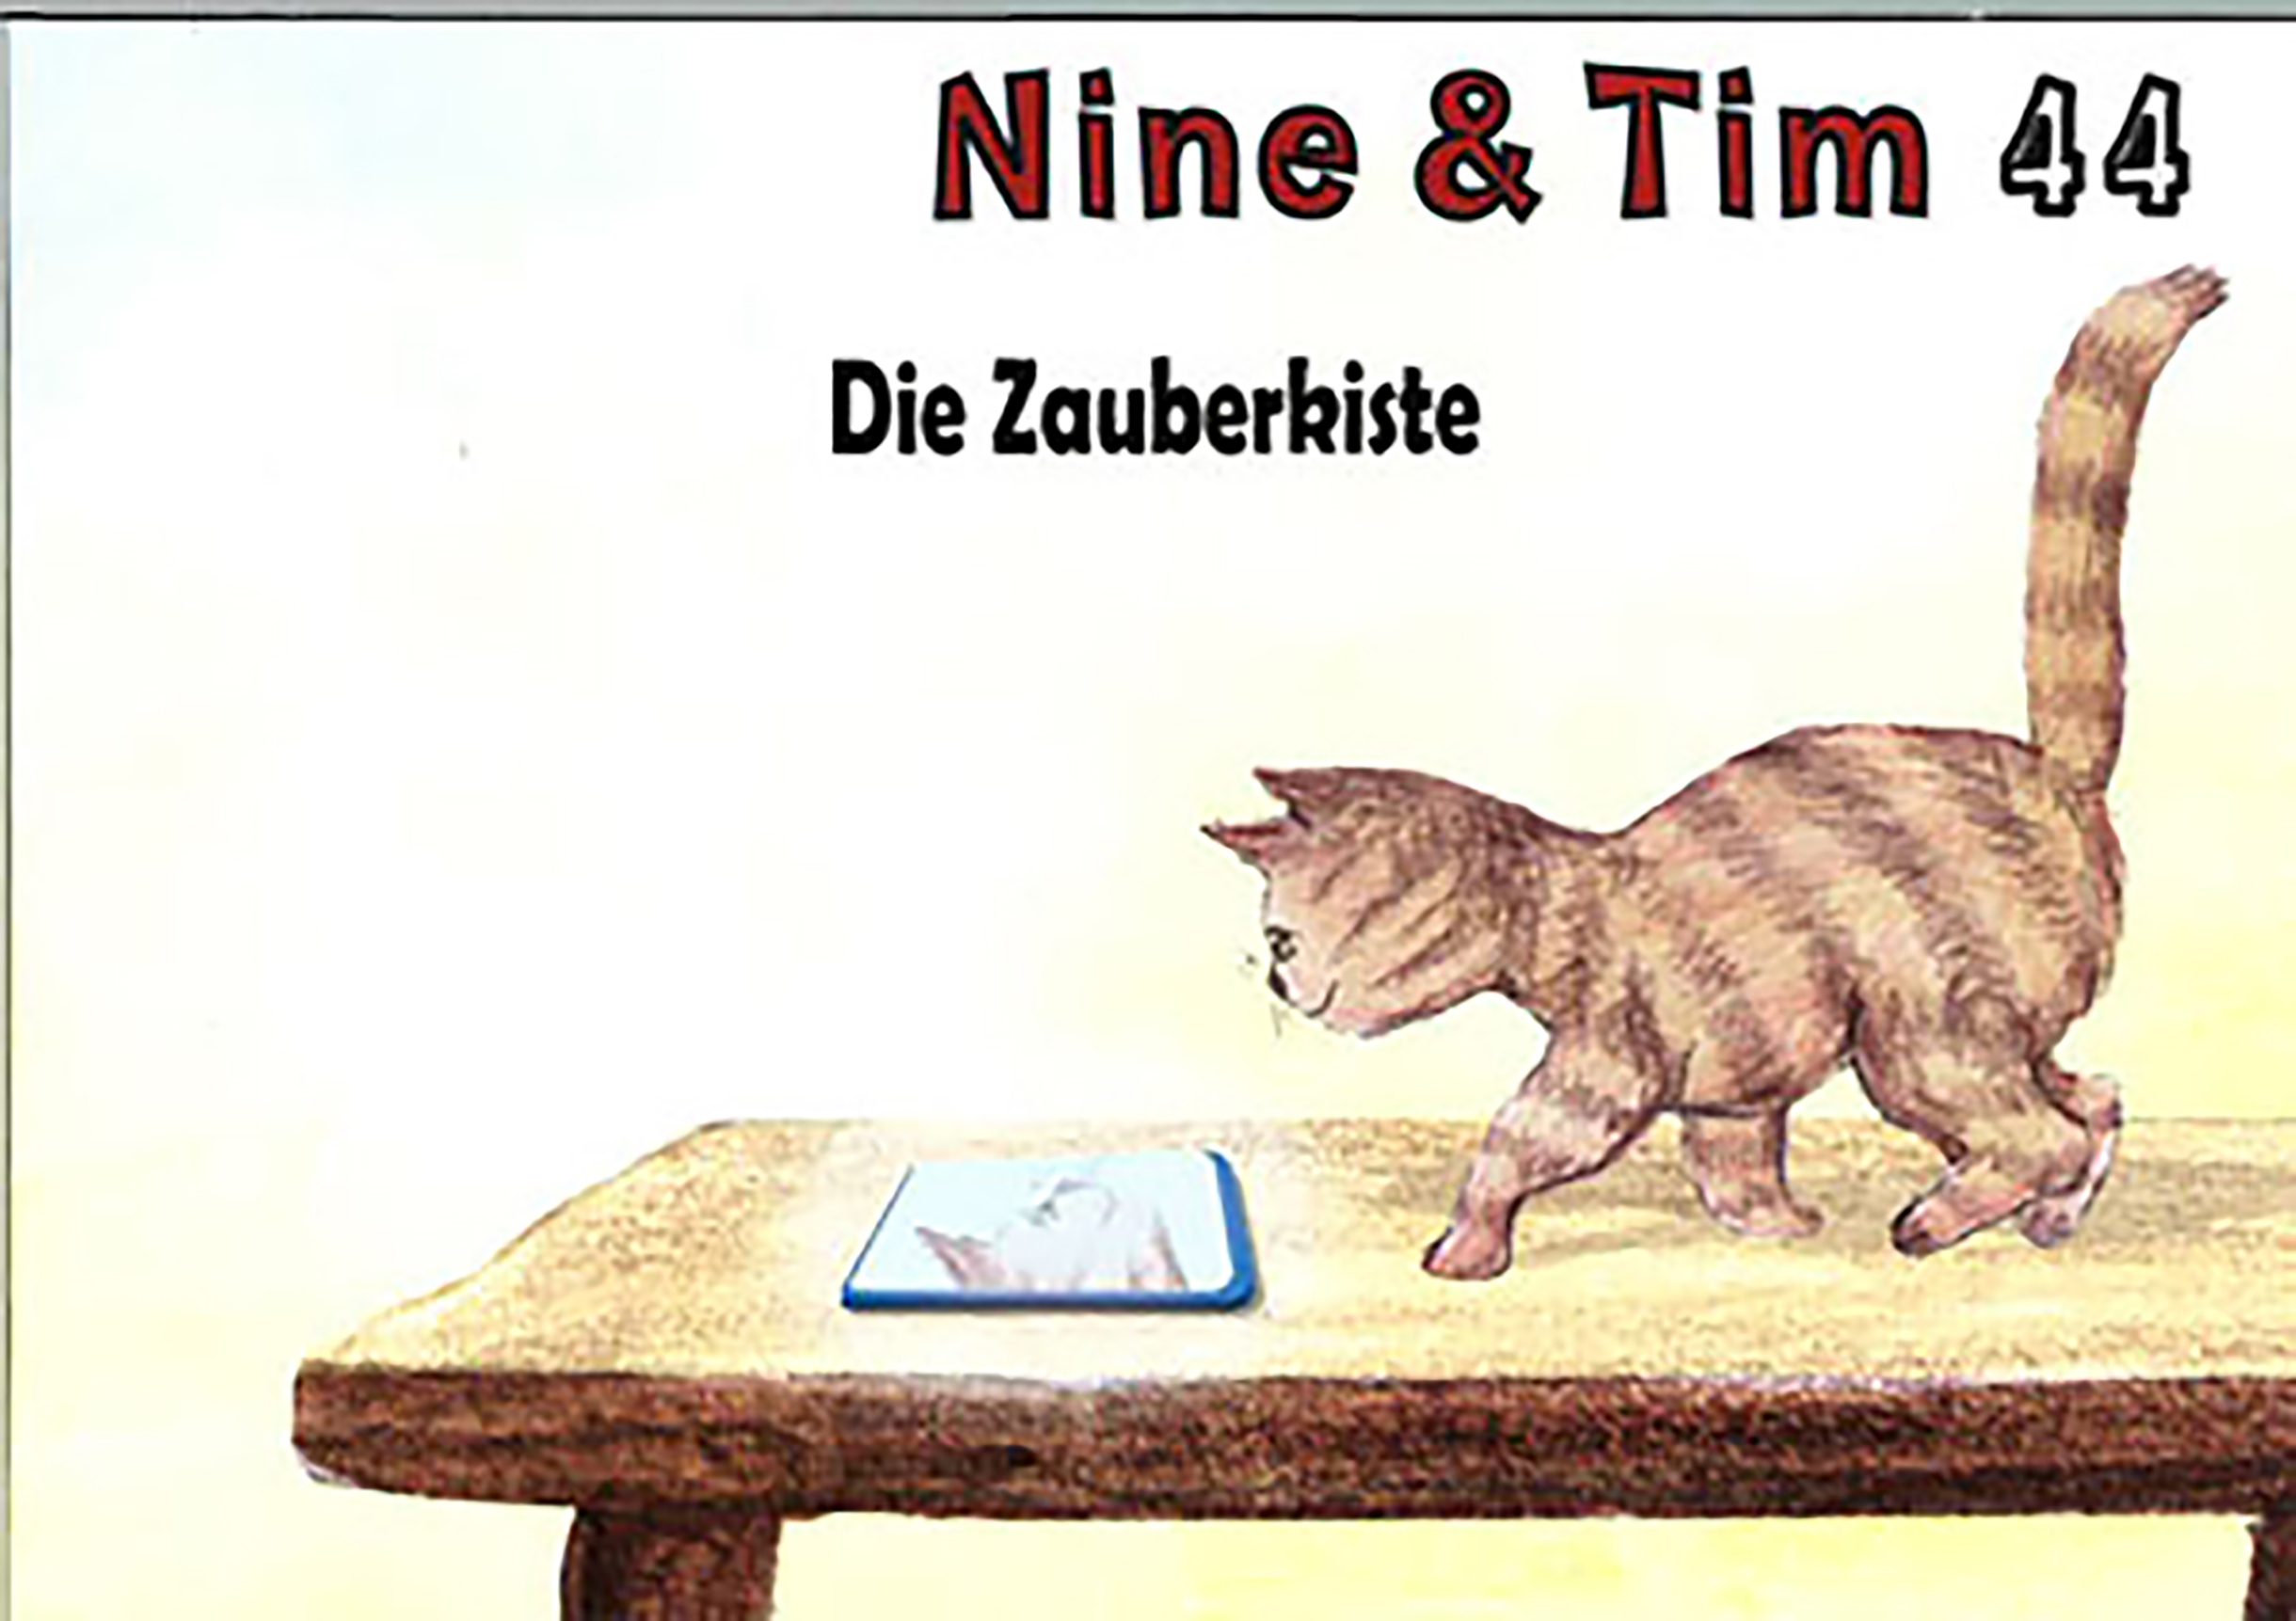 Das Bild zeigt ein Cover der Publikation Nine  Tim Heft 44